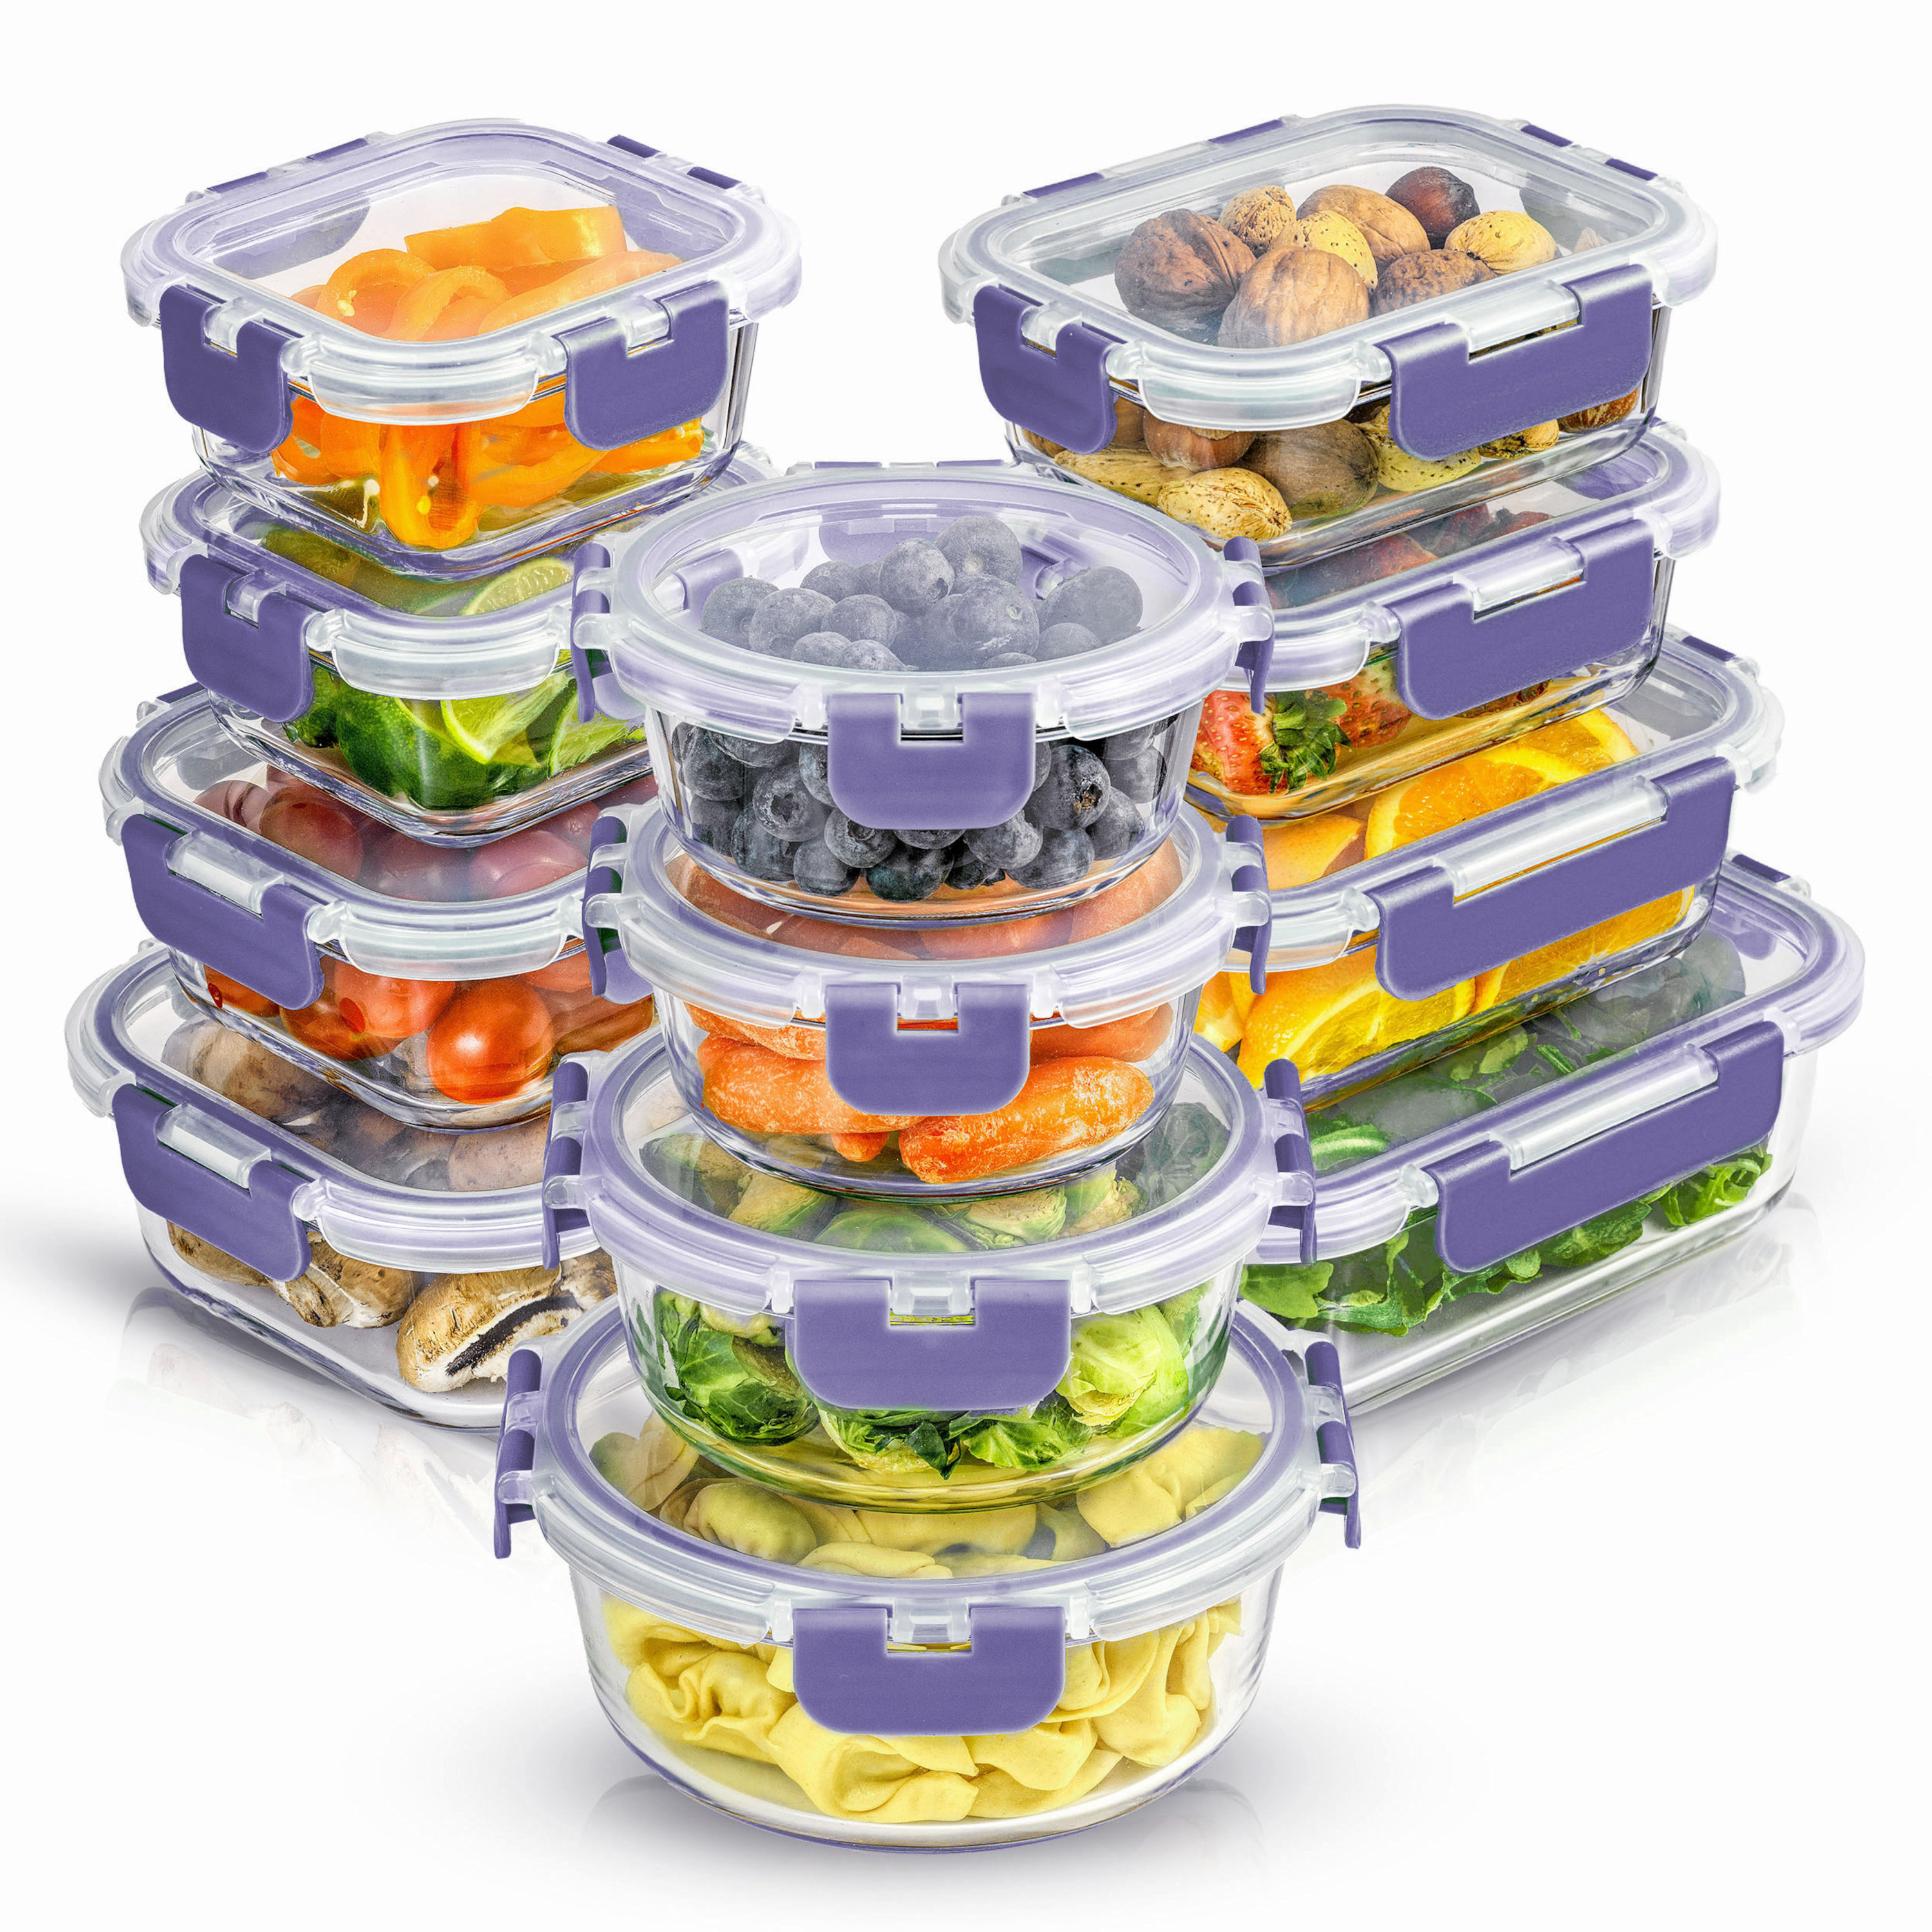 https://assets.wfcdn.com/im/71393458/compr-r85/2017/201776687/joyjolt-12-piece-glass-storage-container-kitchen-food-storage-set-with-lids.jpg